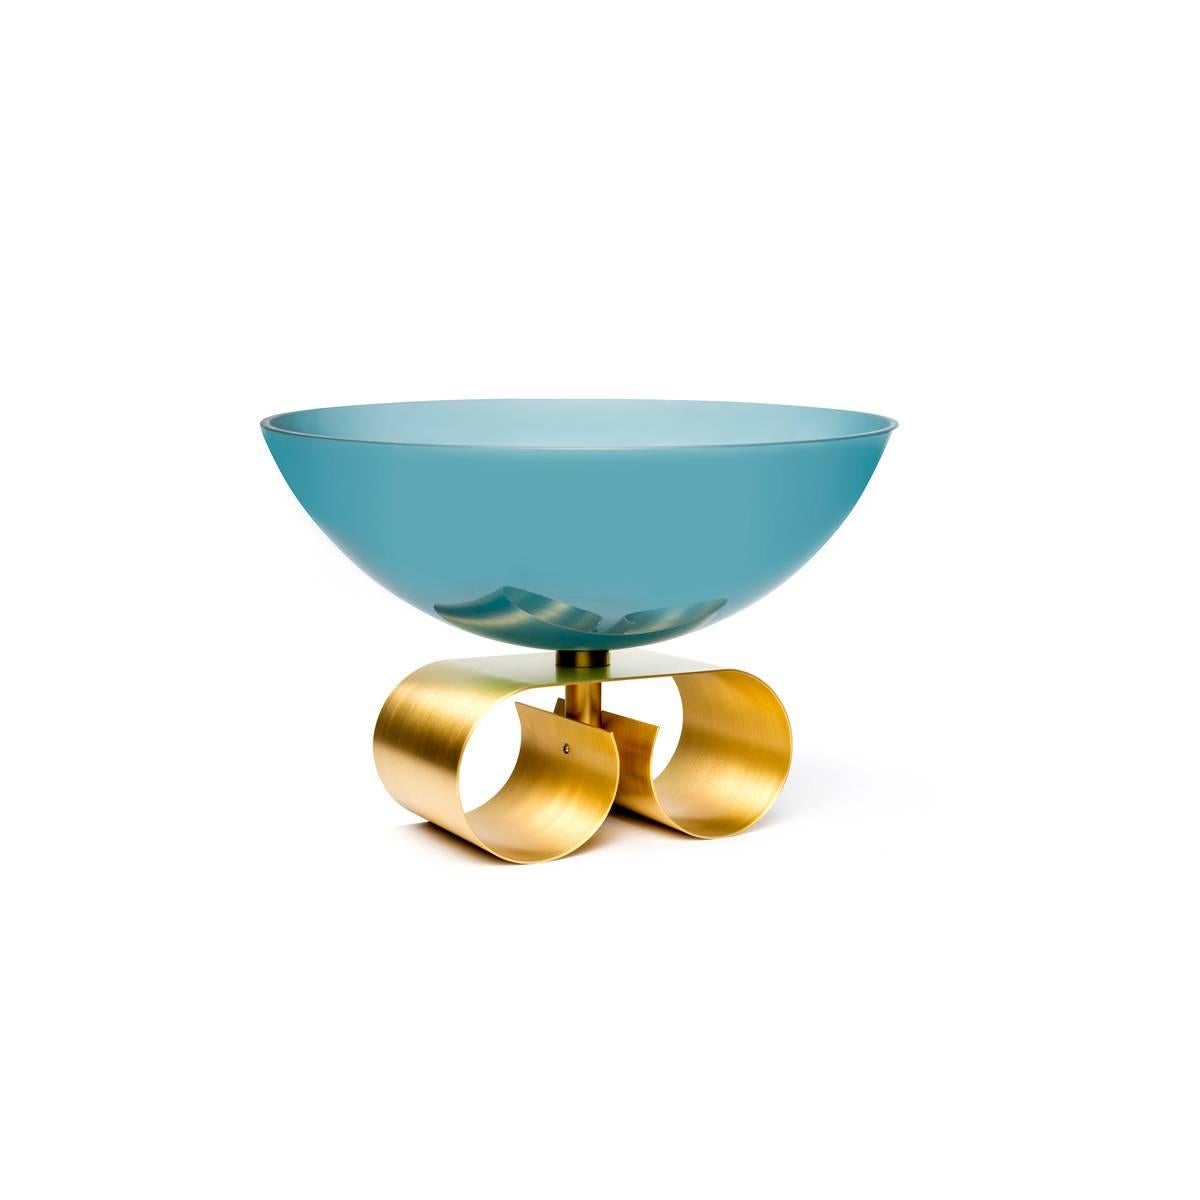 Grand bol en verre avec base en laiton, disponible en deux versions de couleurs : bleu ou bleu clair.
Parure II, conçue par Cristina Celestino, fait partie de Dolce Vita, une collection qui célèbre sur un ton contemporain le charme de l'Italie des